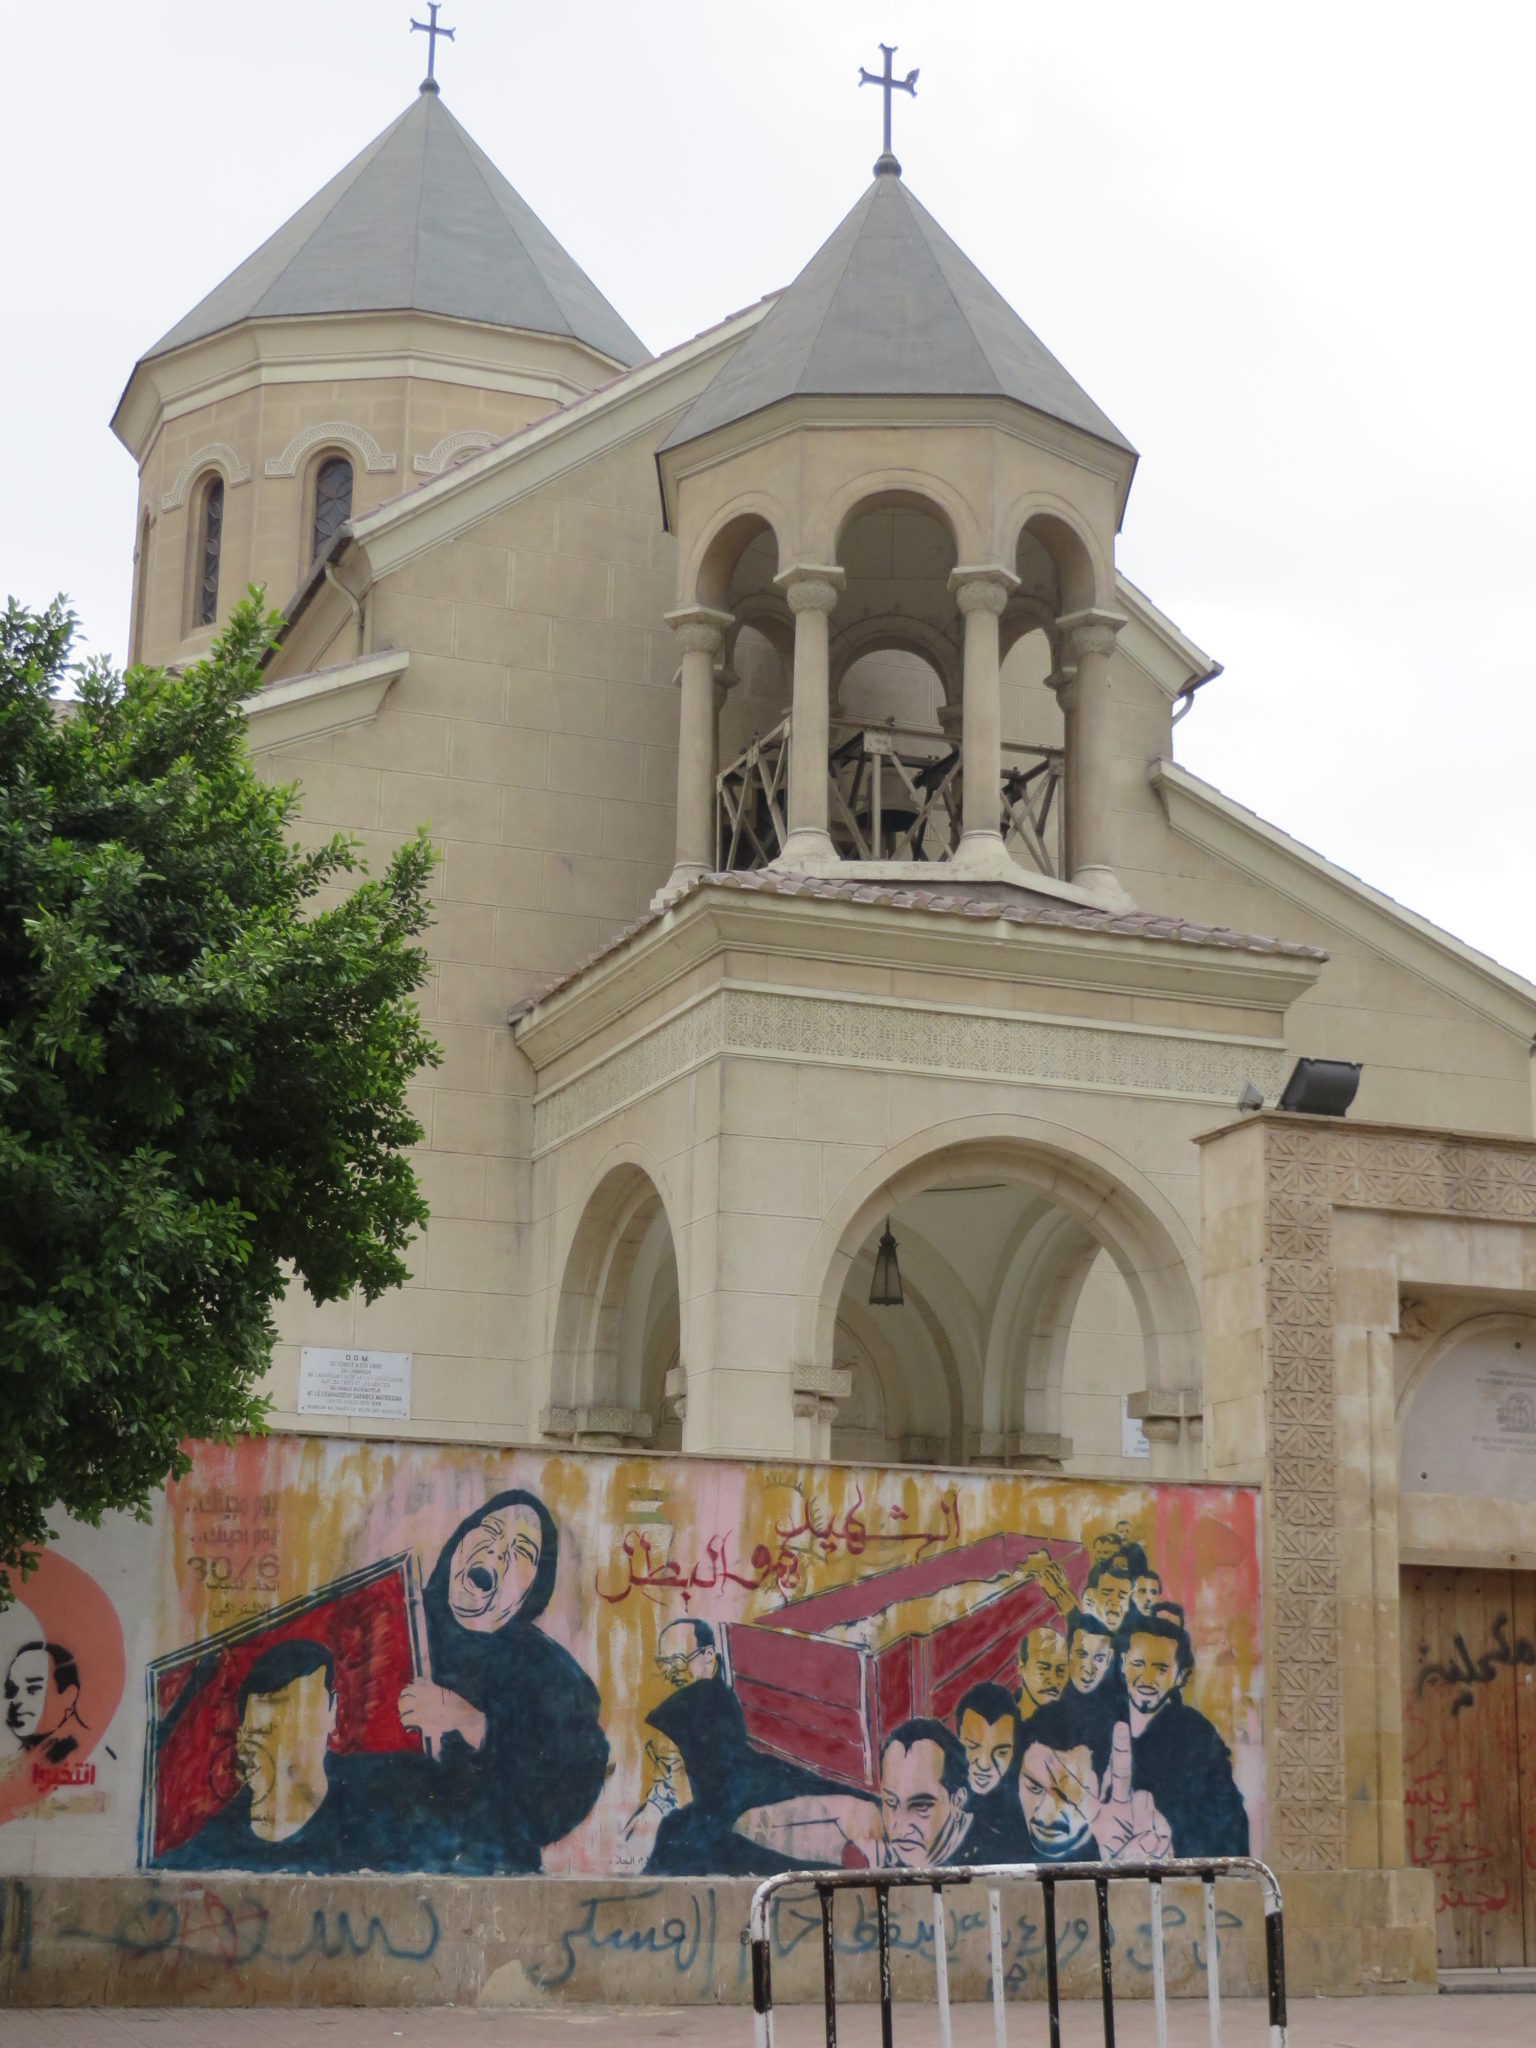 Uma igreja católica com um mural grafitado mostrando muçulmanos chorando